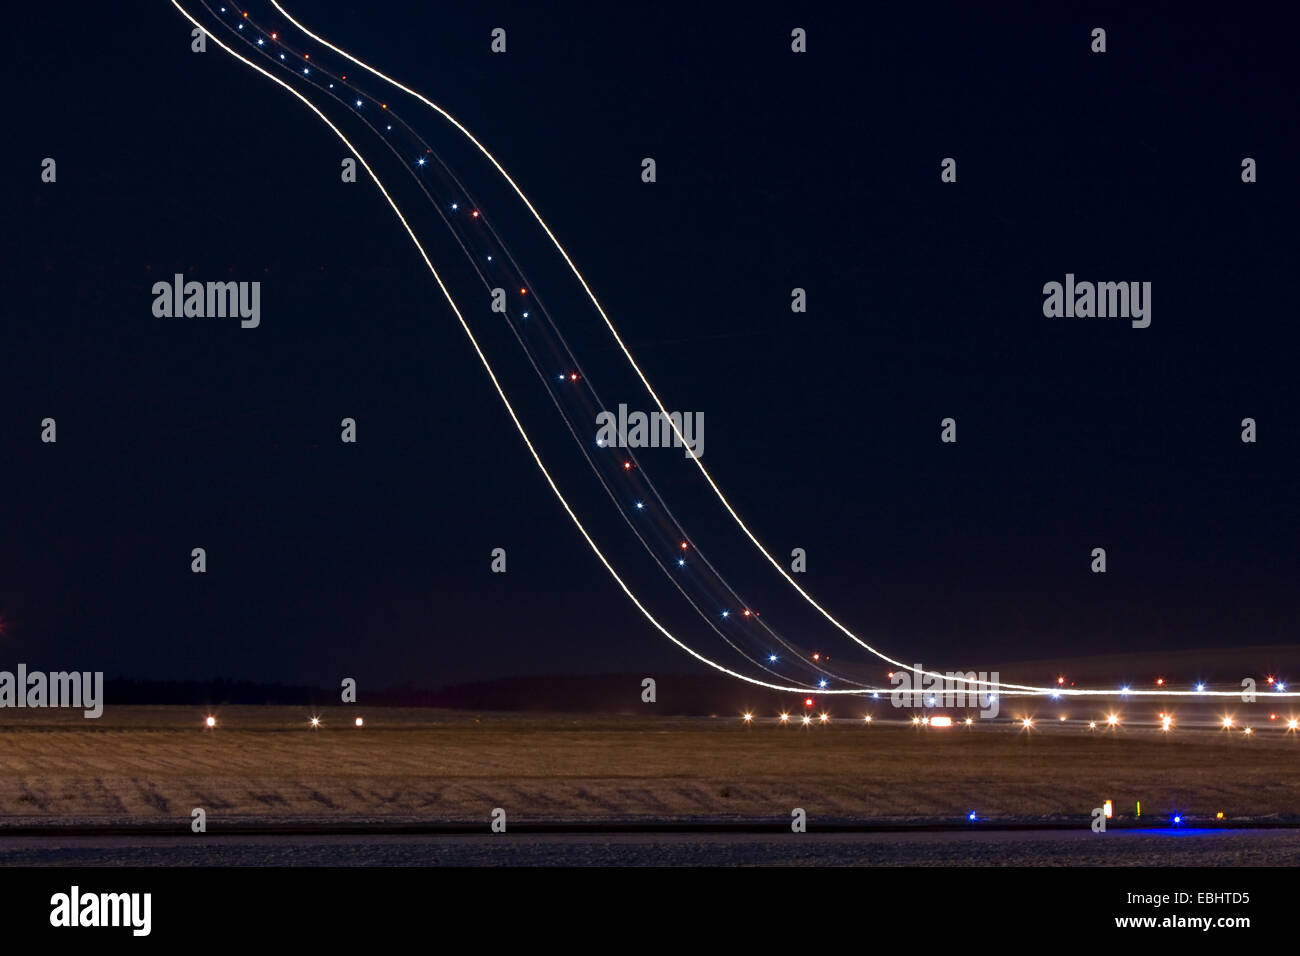 Des sentiers de lumière un avion décolle dans la nuit de l'aéroport de Skavsta, Suède. Banque D'Images